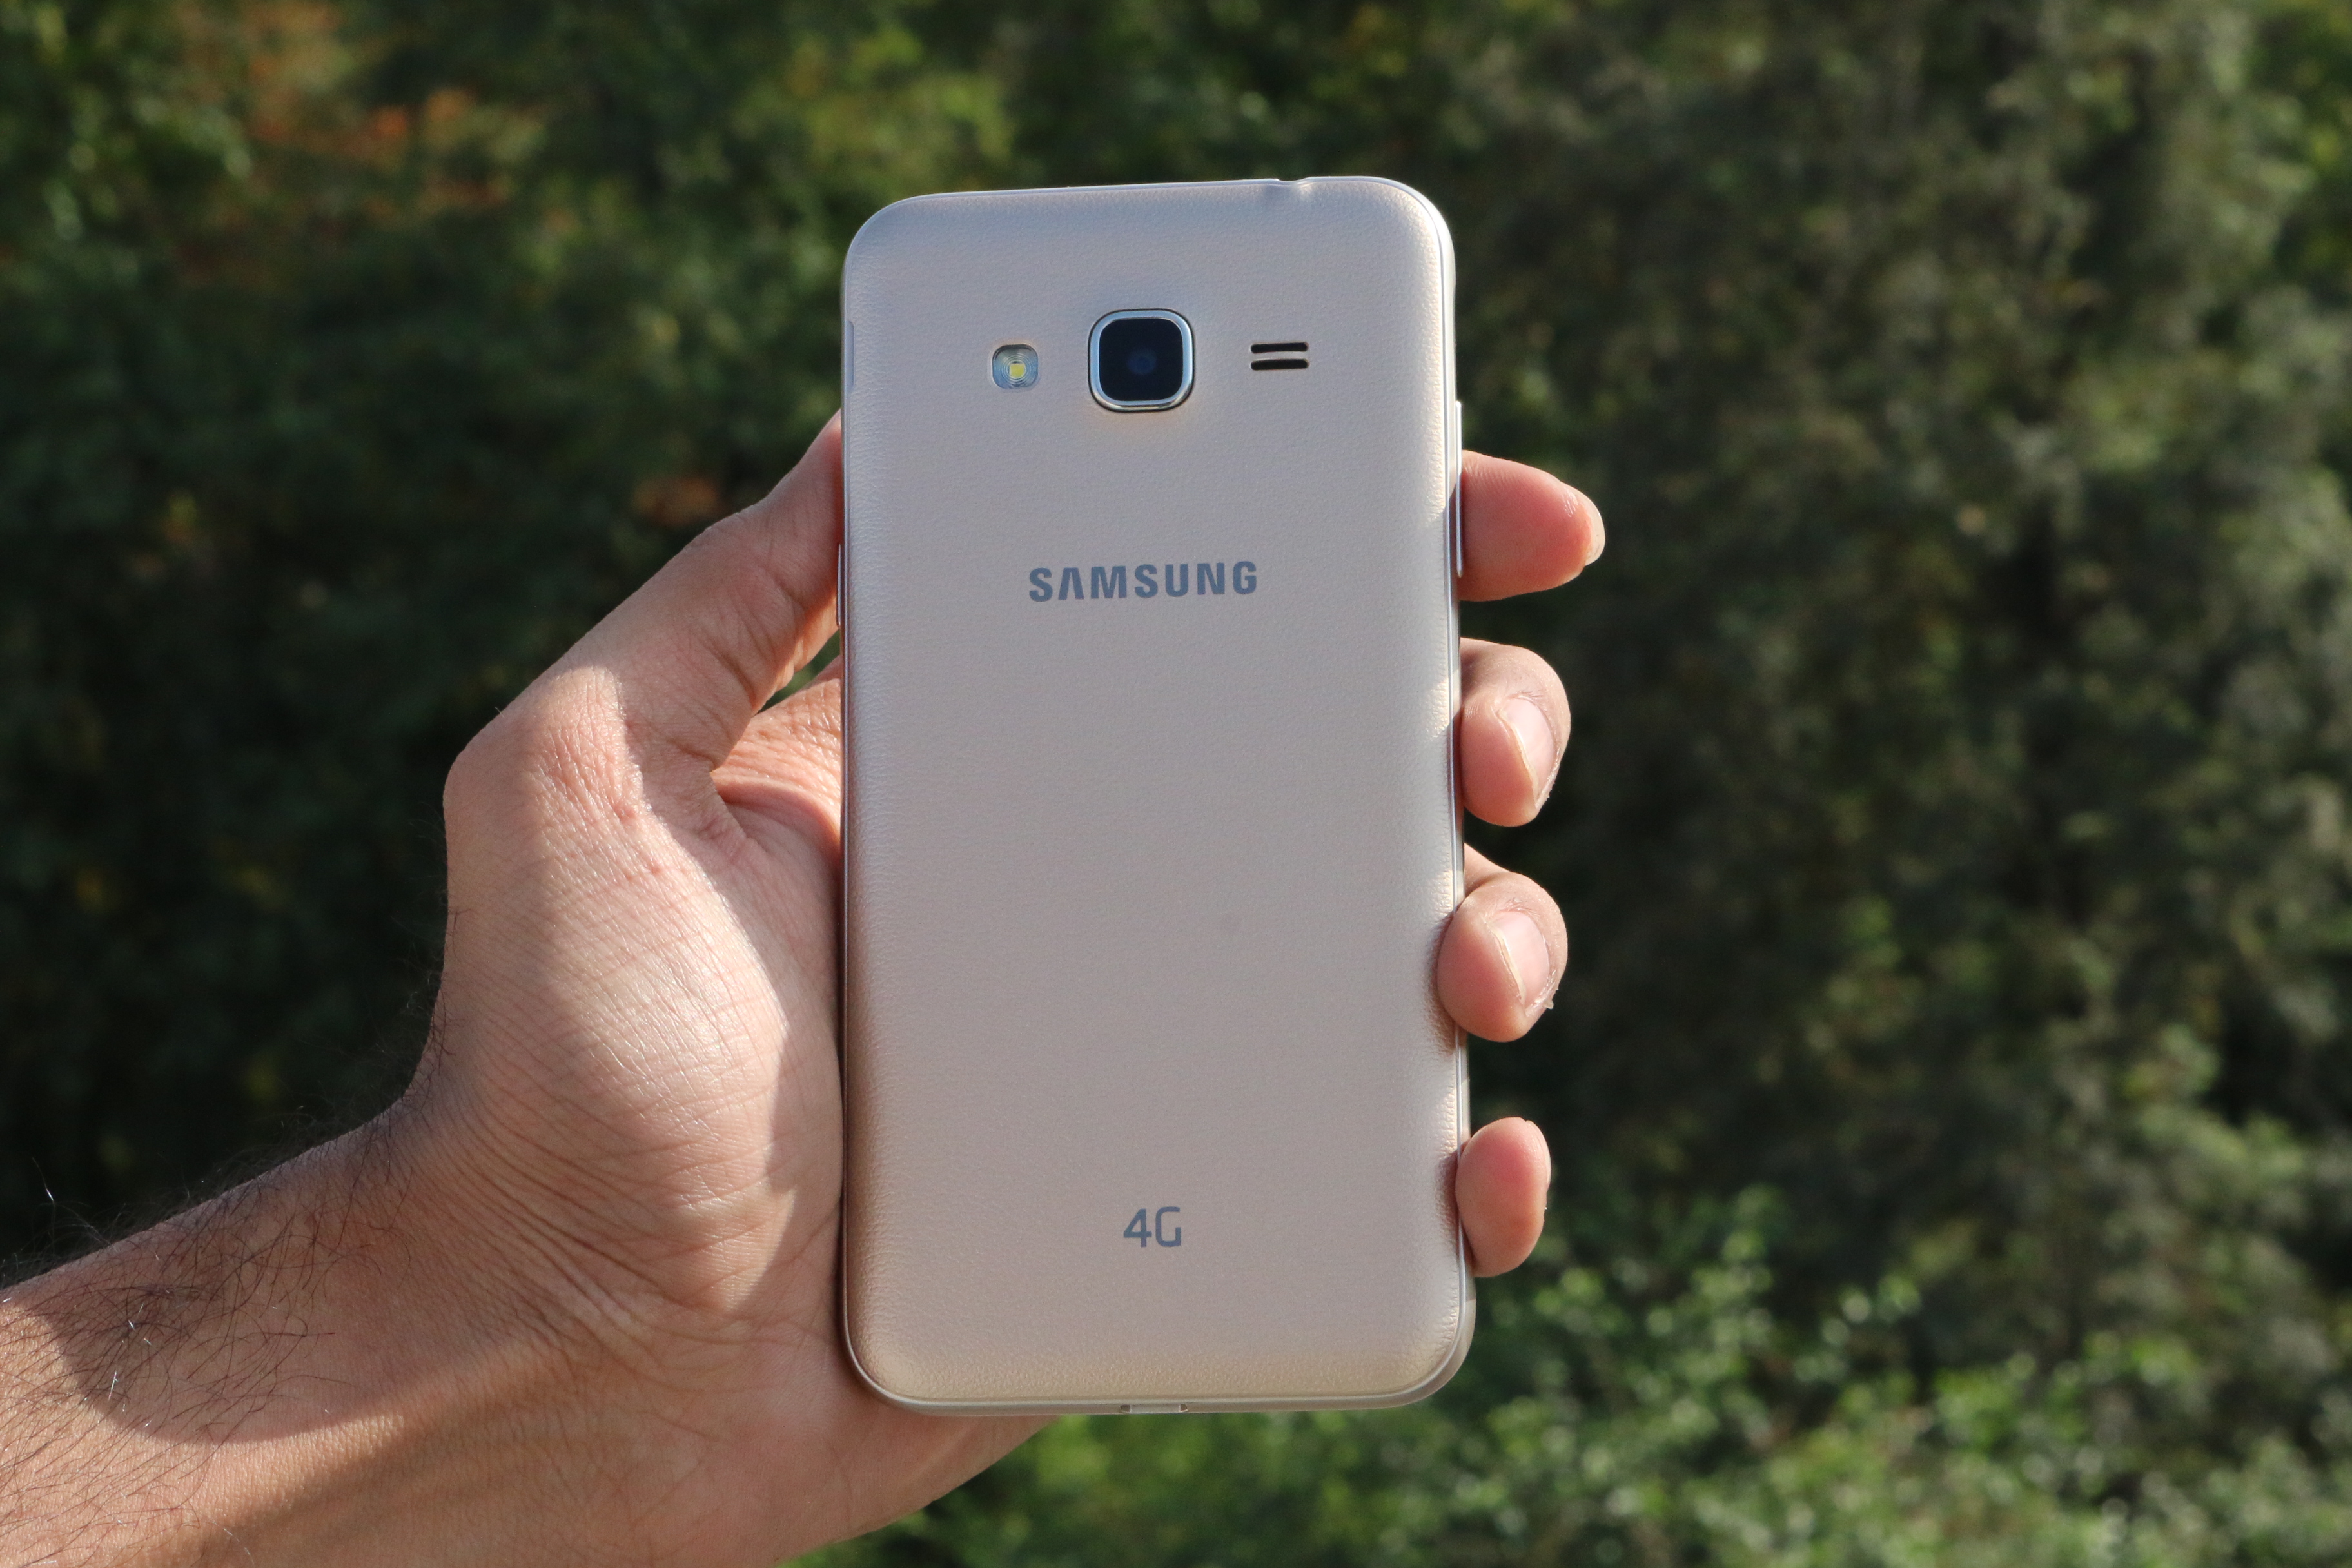 שאלות נפוצות על Samsung Galaxy J3, יתרונות וחסרונות, שאילתות משתמשים ותשובות